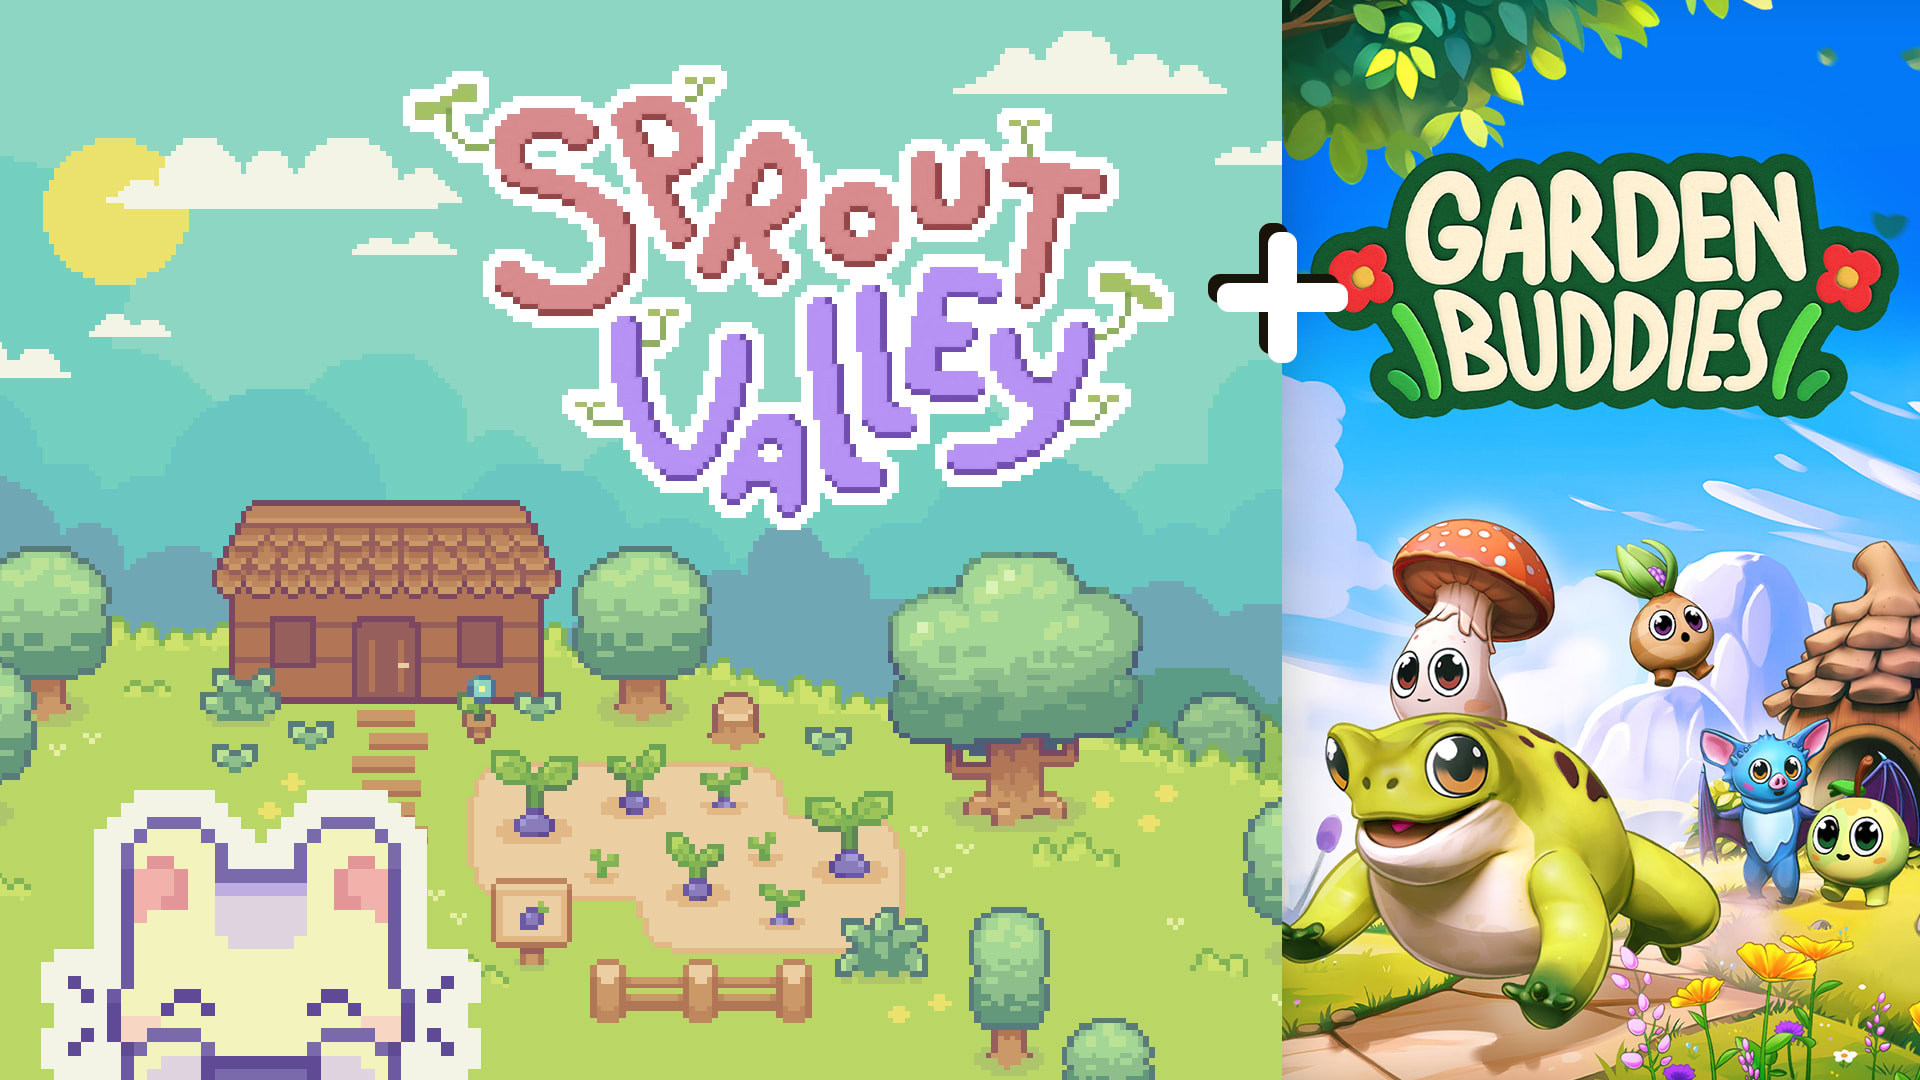 Sprout Valley + Garden Buddies